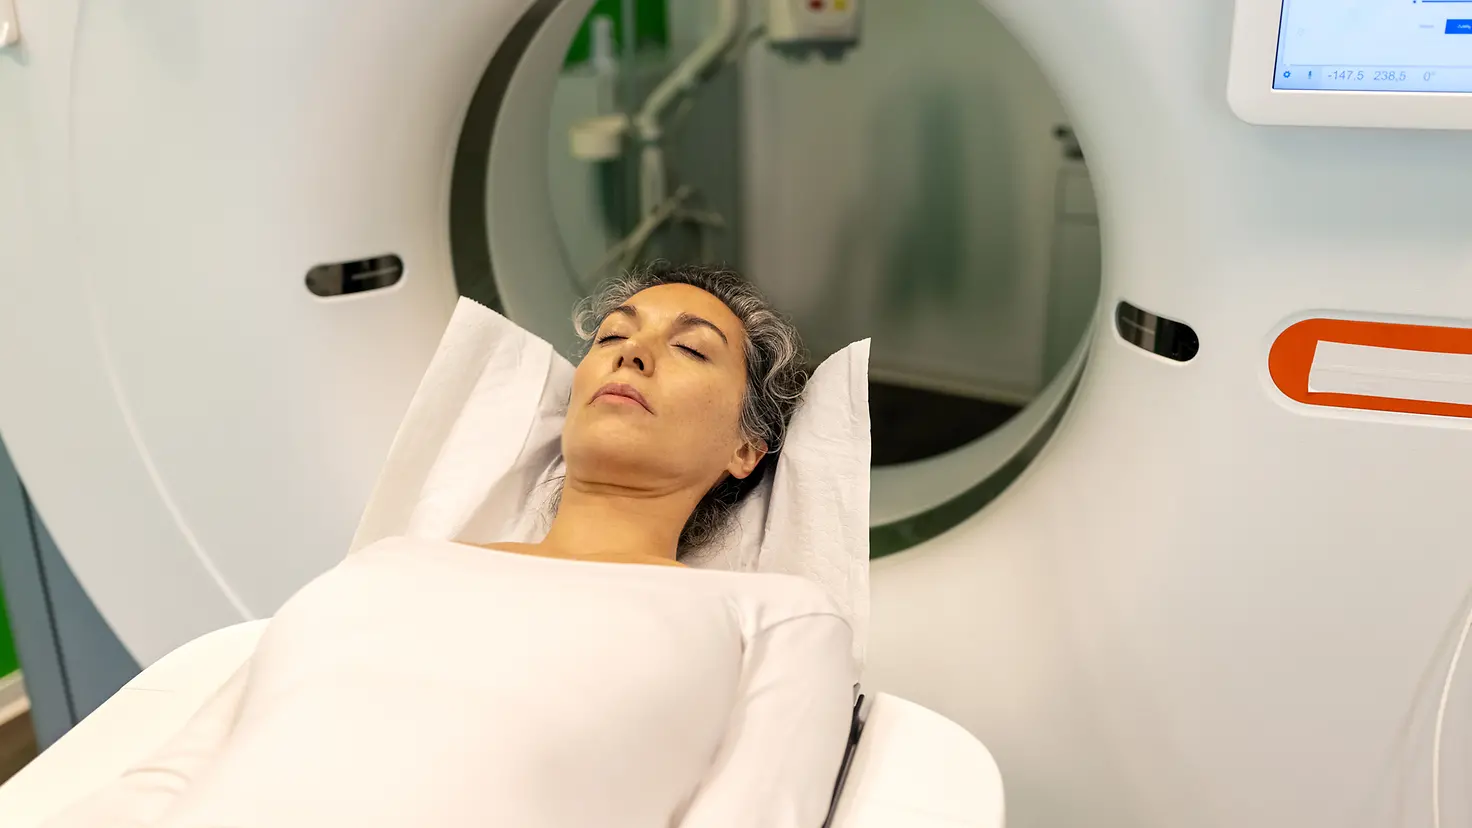 Eine Frau auf einer Therapieliege erhält eine Computertomografie (CT) am Kopf.